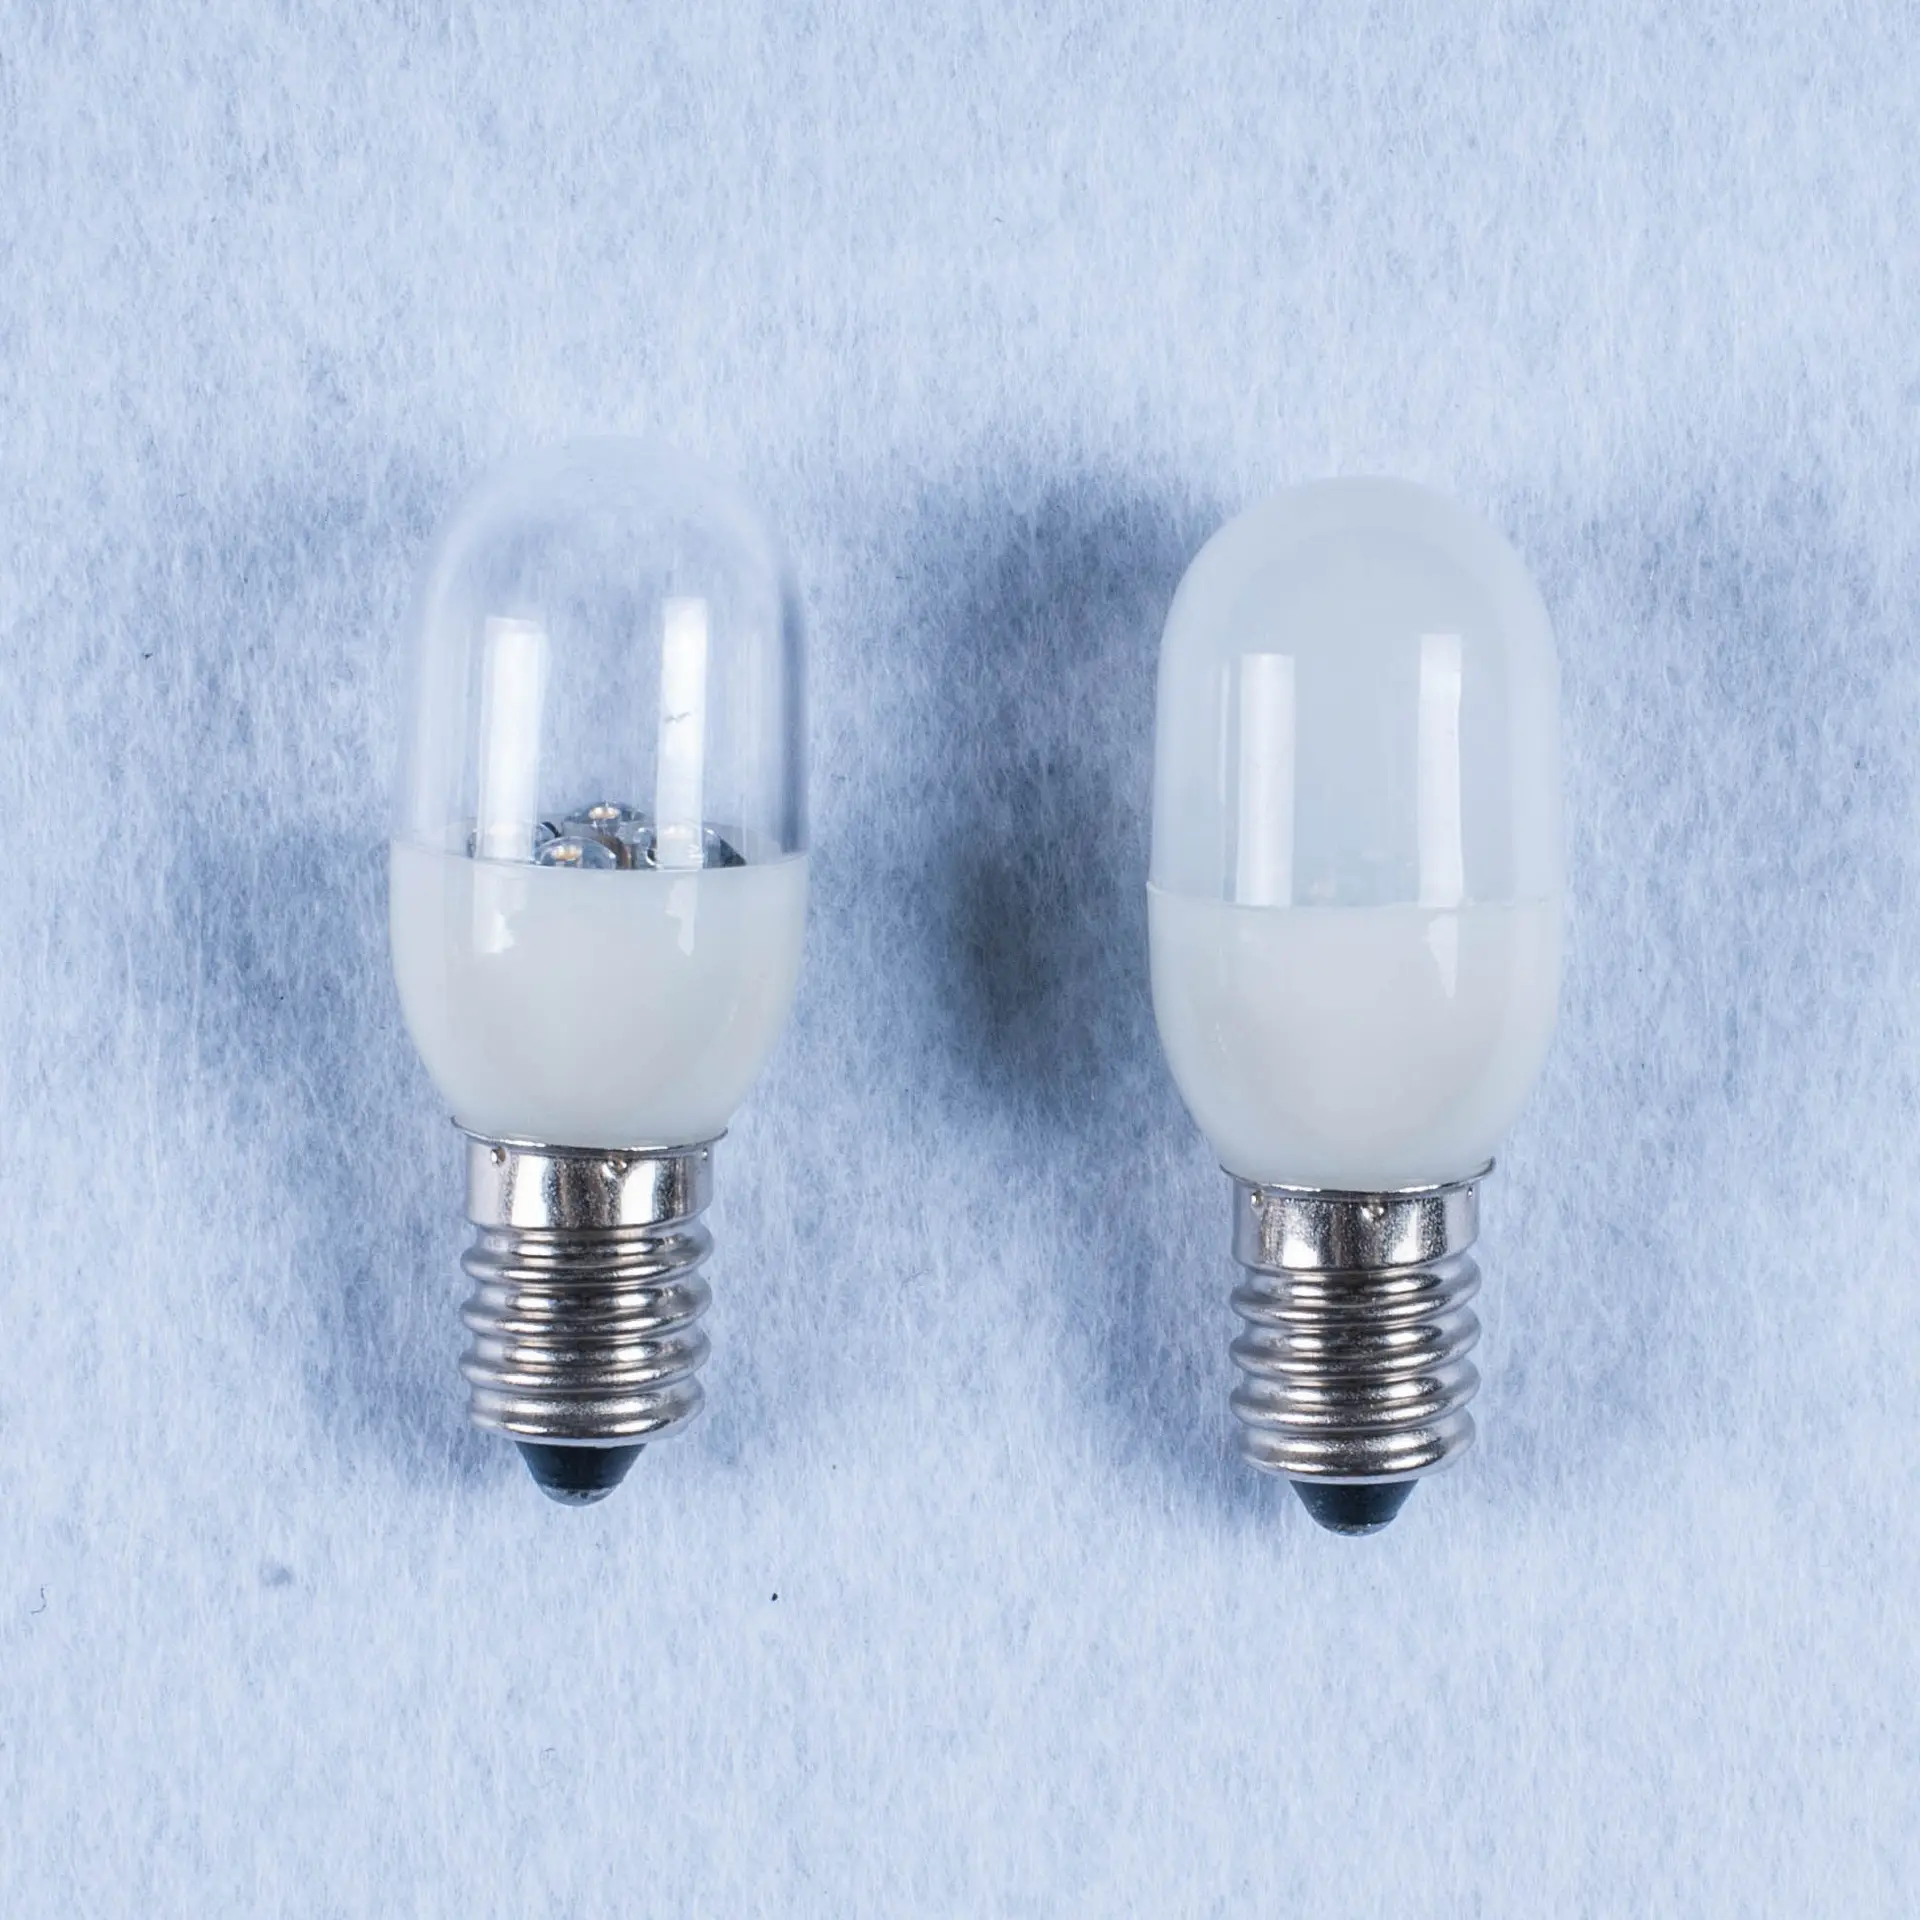 110v 240v indoor decorative LED Bulb light T22 E12 E14